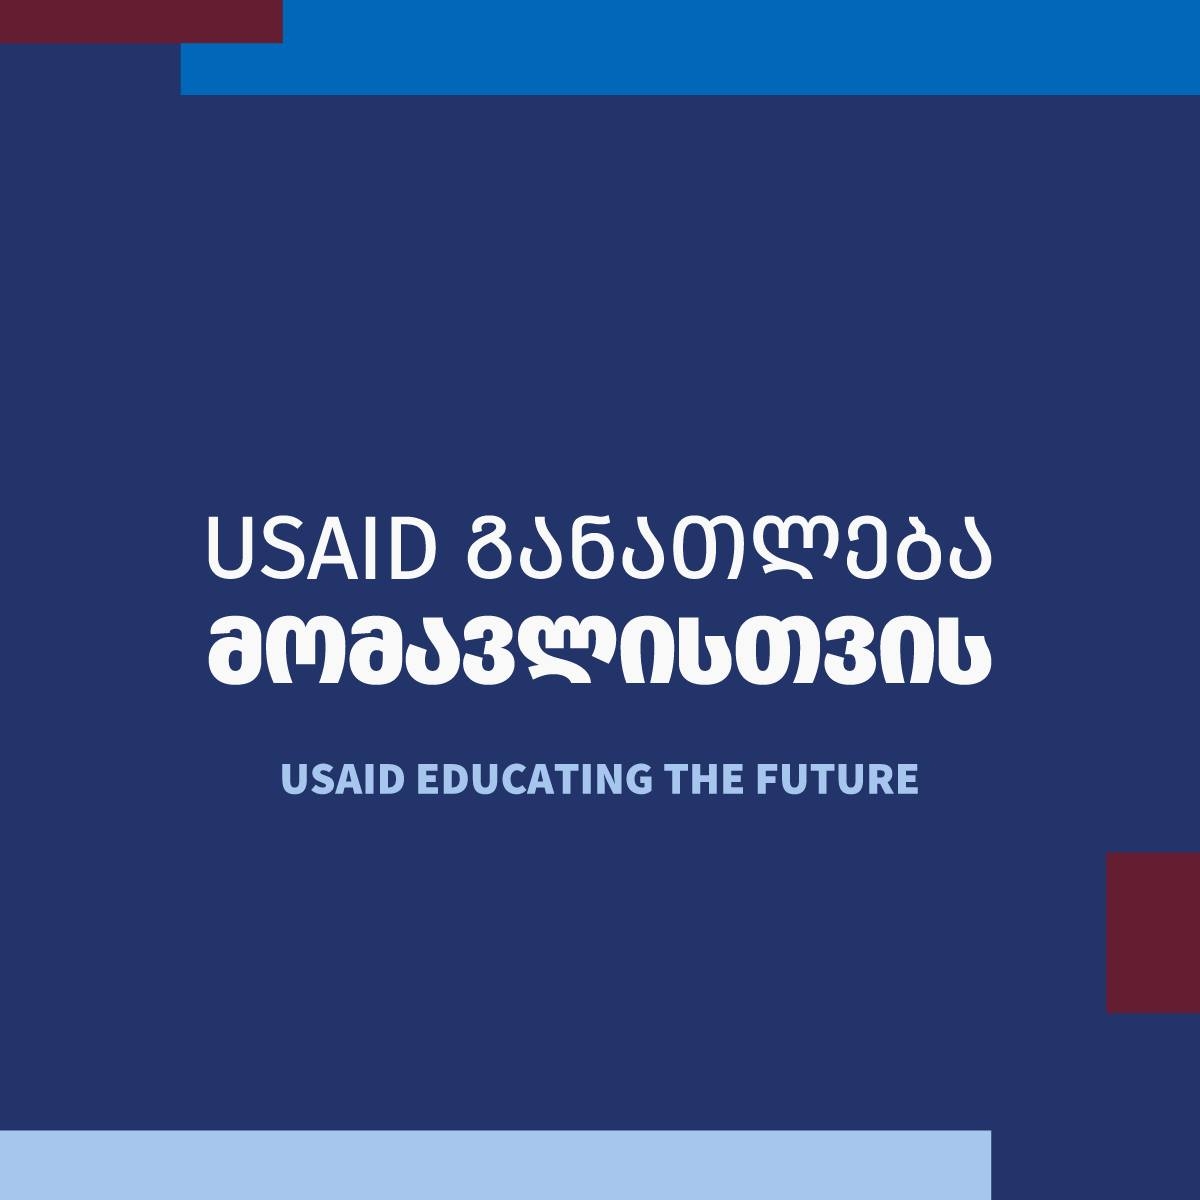 განათლება მომავლისთვის  (USAID)